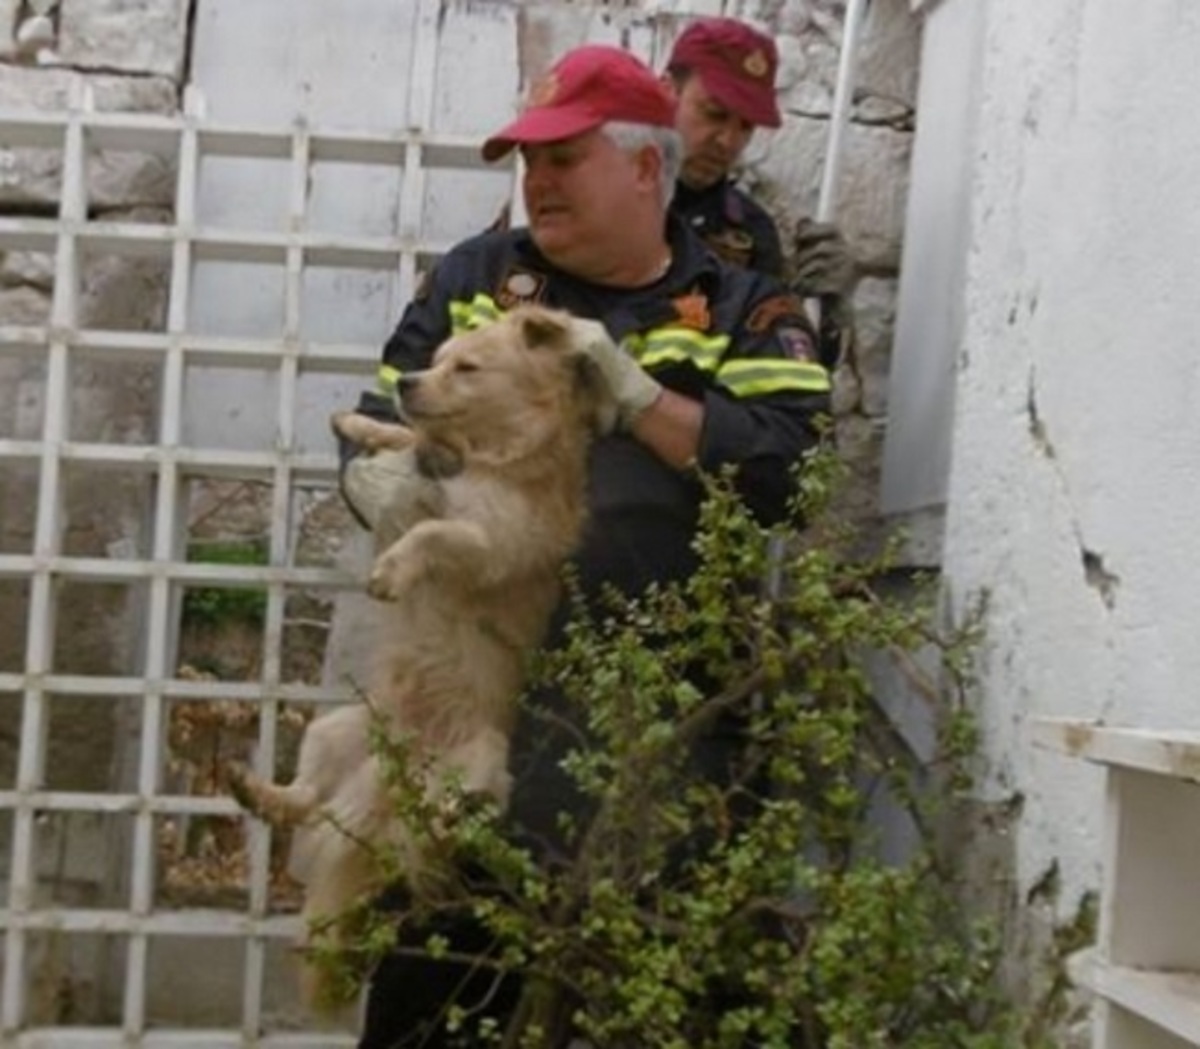 Ηράκλειο: Έσωσαν τη ζωή σε εγκλωβισμένο σκύλο – Χειροκροτήματα μετά την επέμβαση των πυροσβεστών [pics]